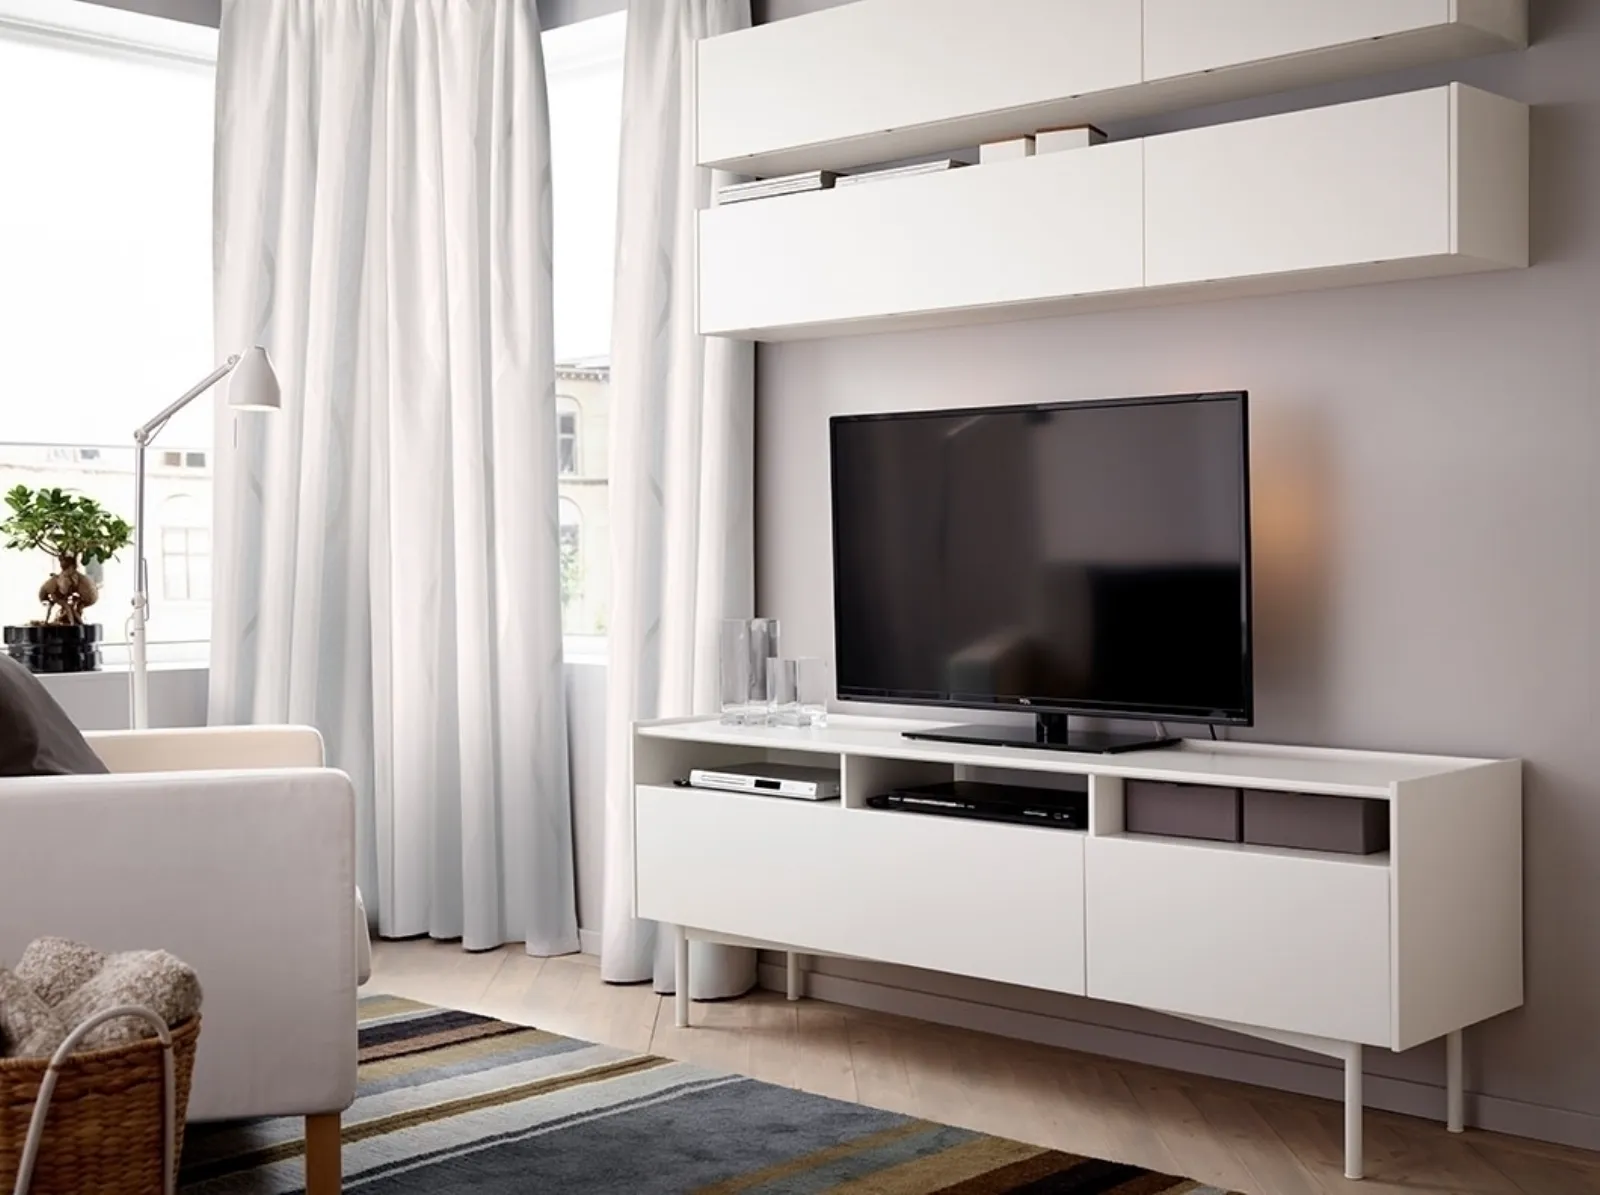 soggiorni ikea mobili moderni e funzionali mobili soggiorno